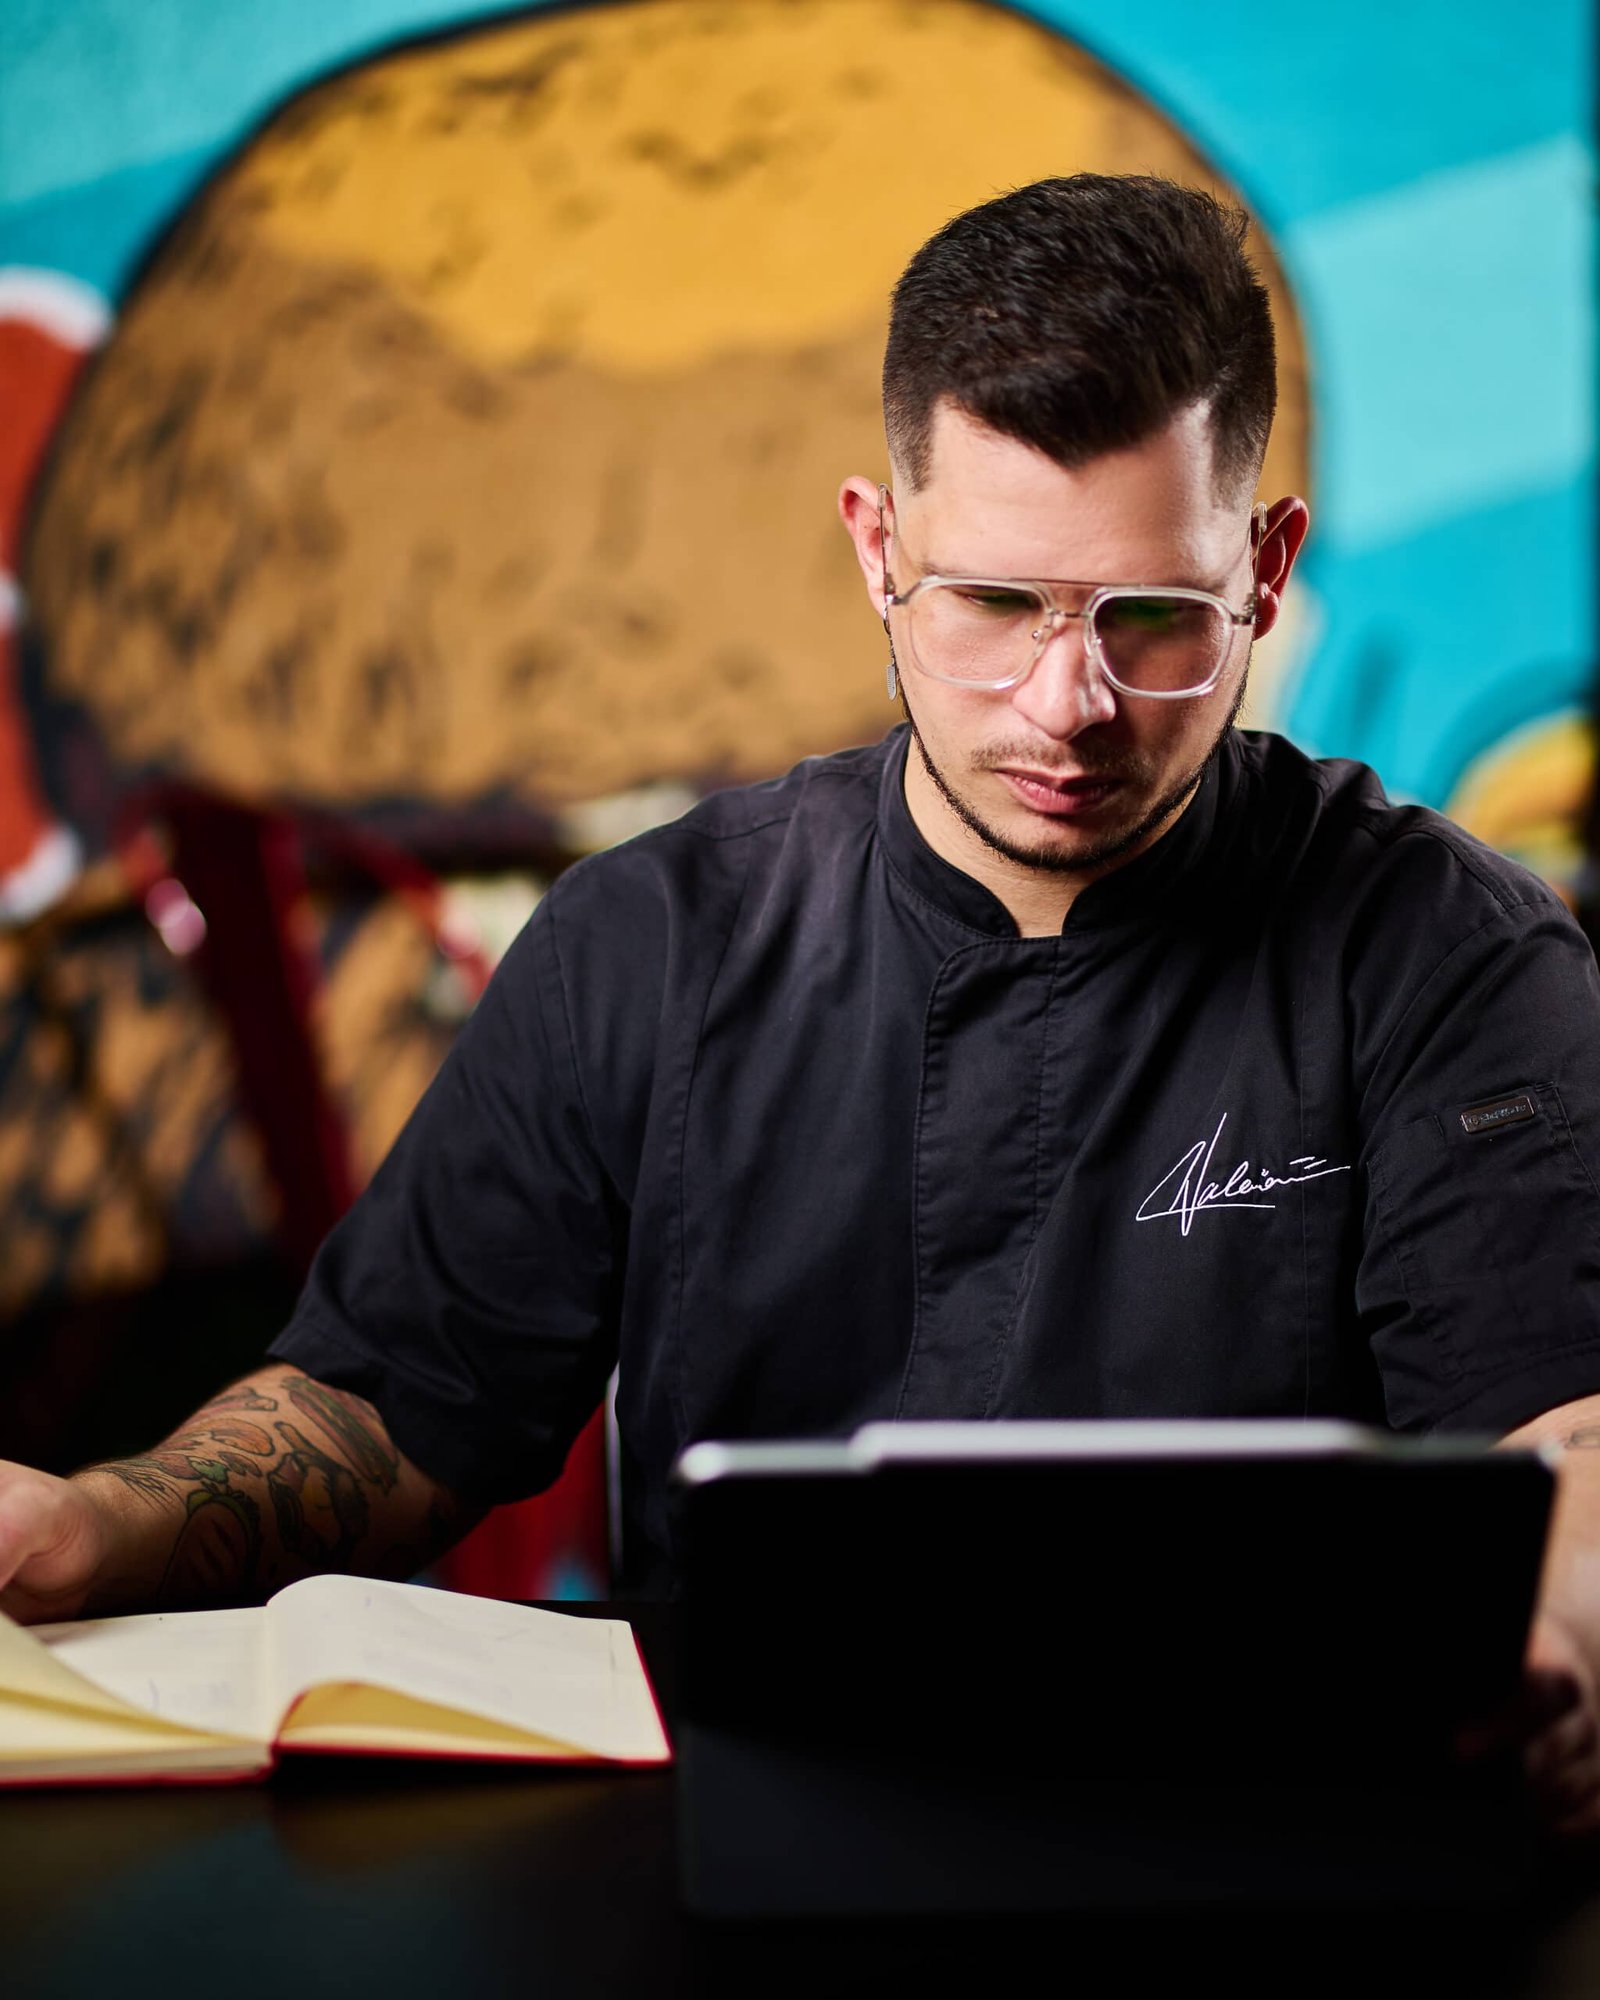 Descubre la pasión culinaria en el portfolio de Chef Andres Valerio